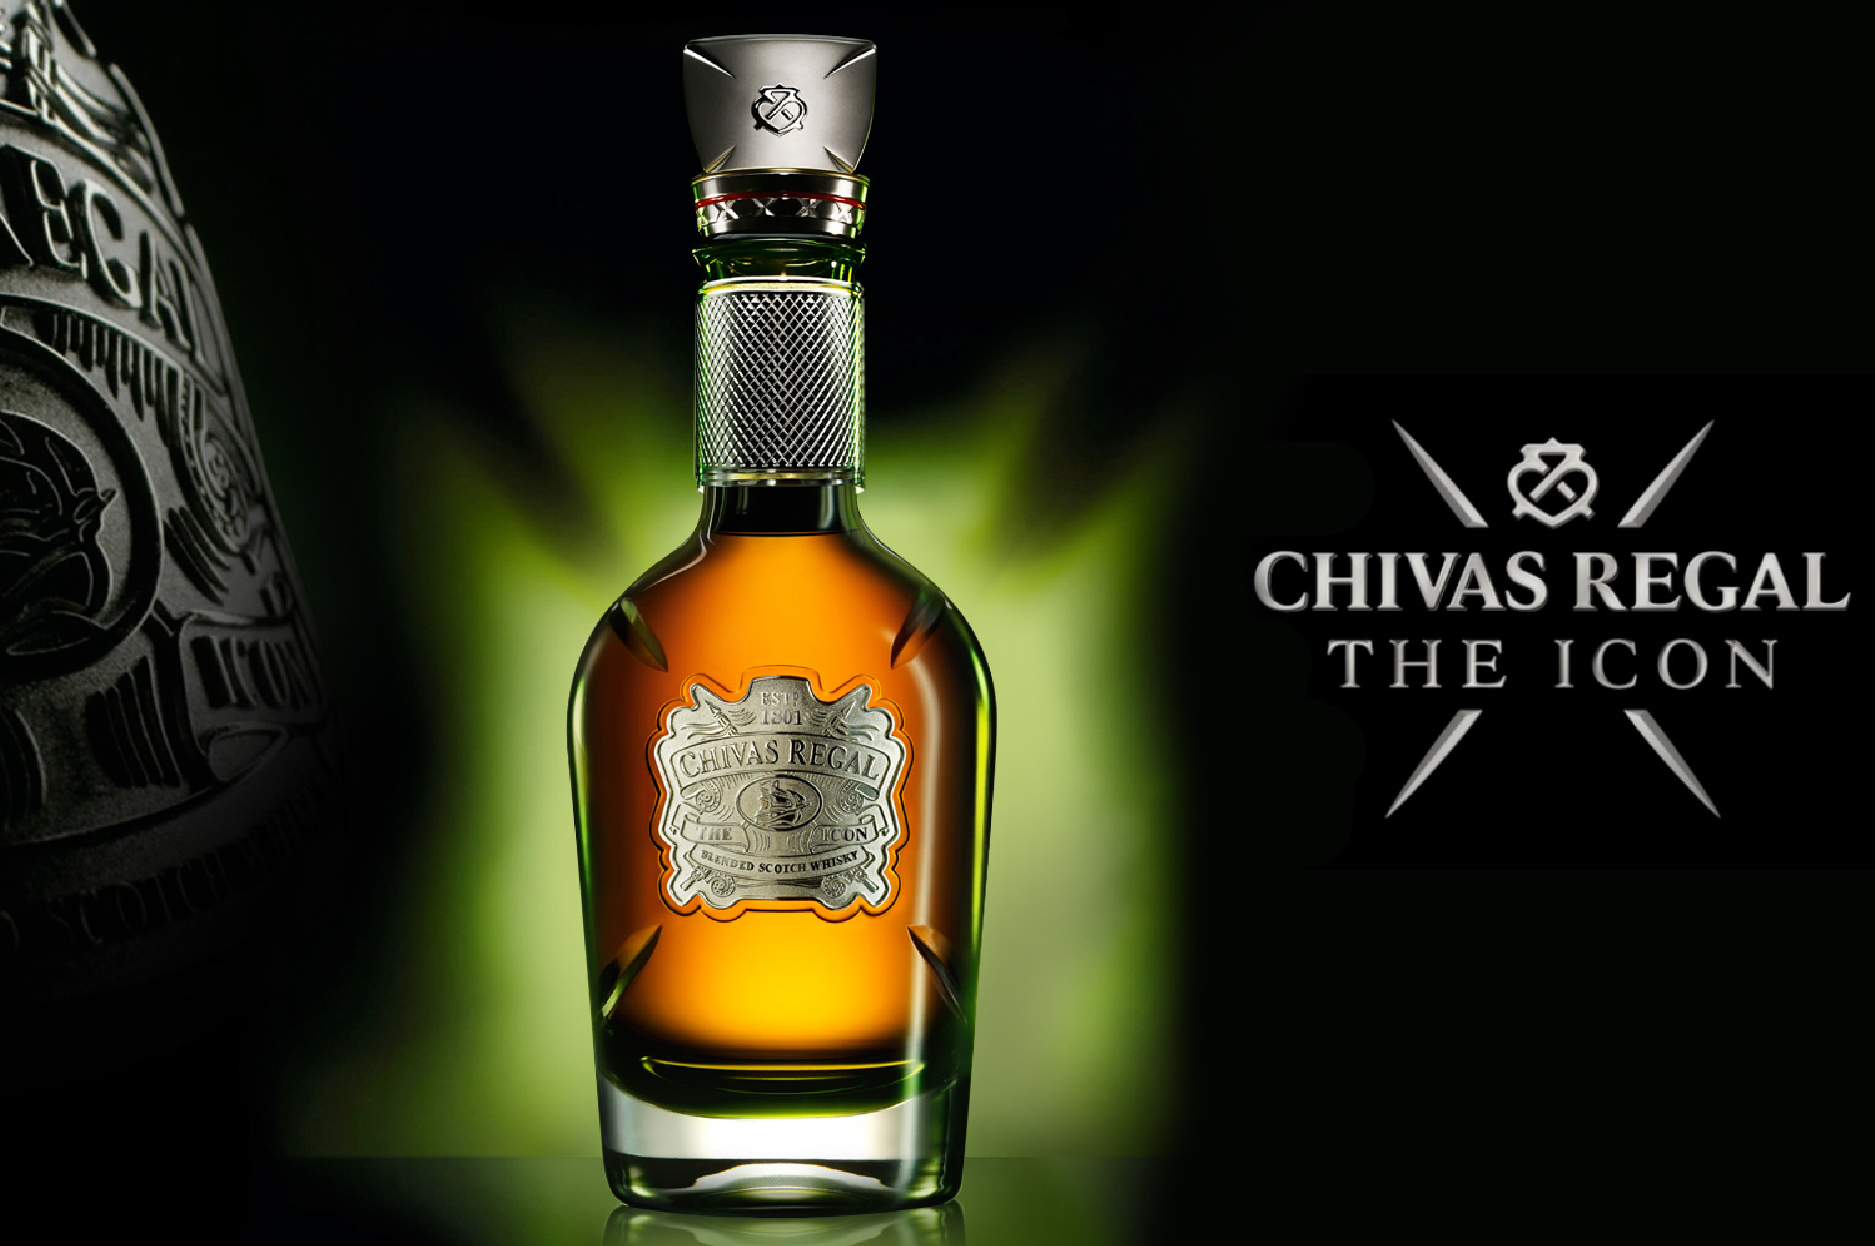 Chivas Regal 25